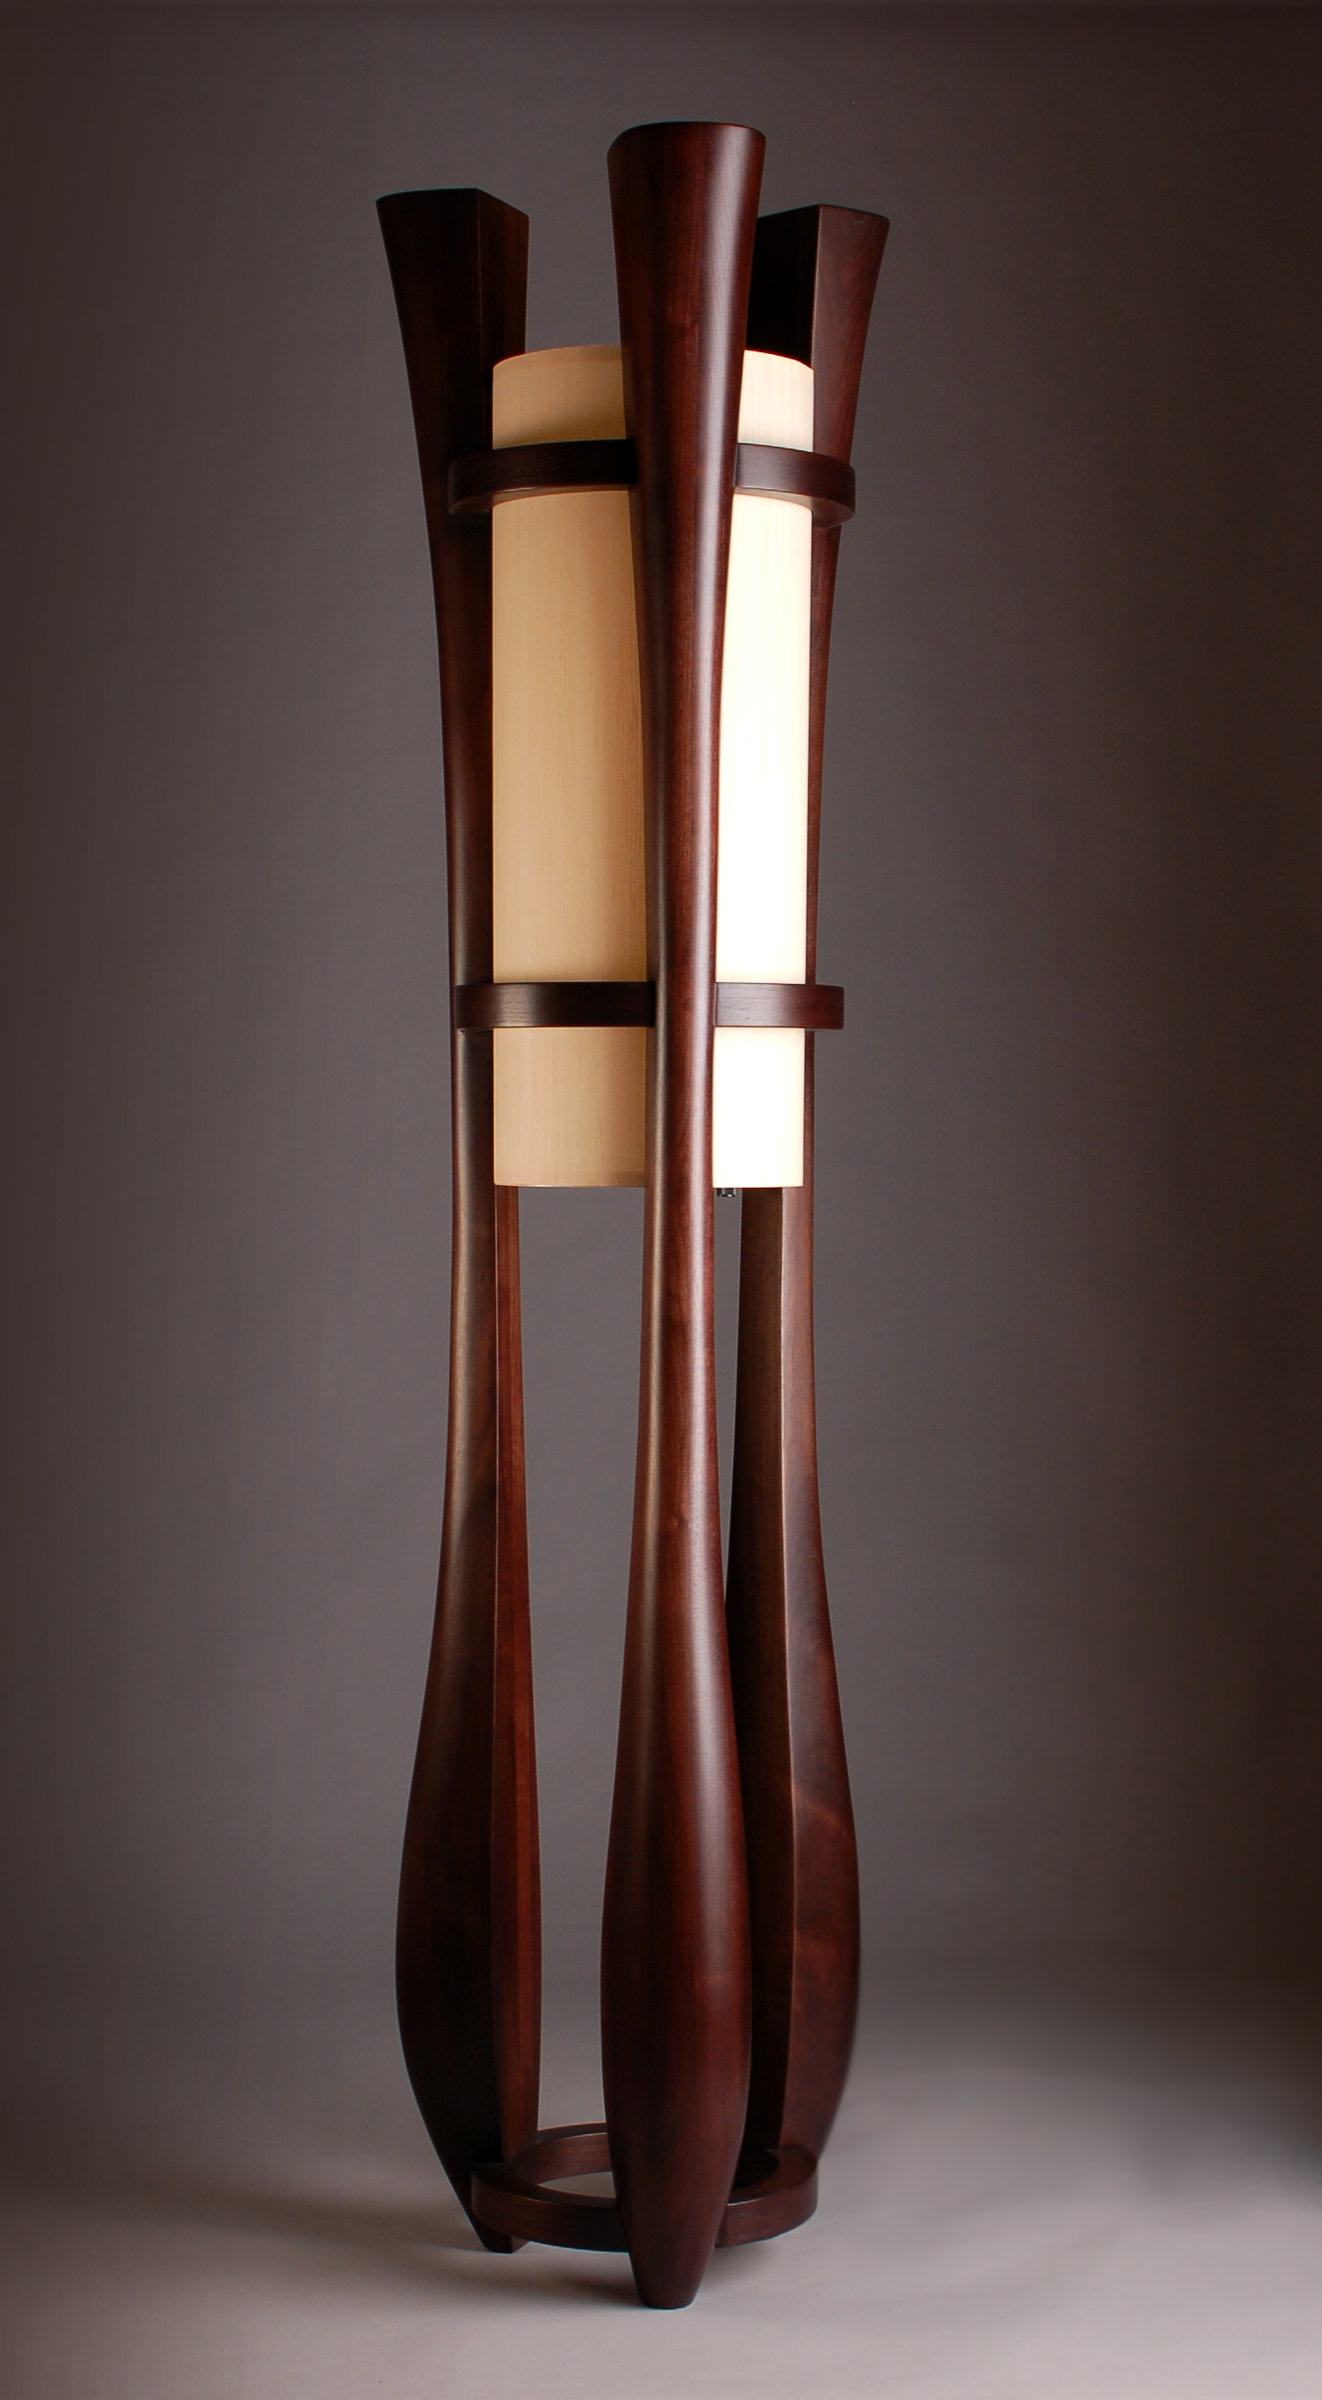 Chronos by Kyle Dallman (Wood Floor Lamp) | Artful Home